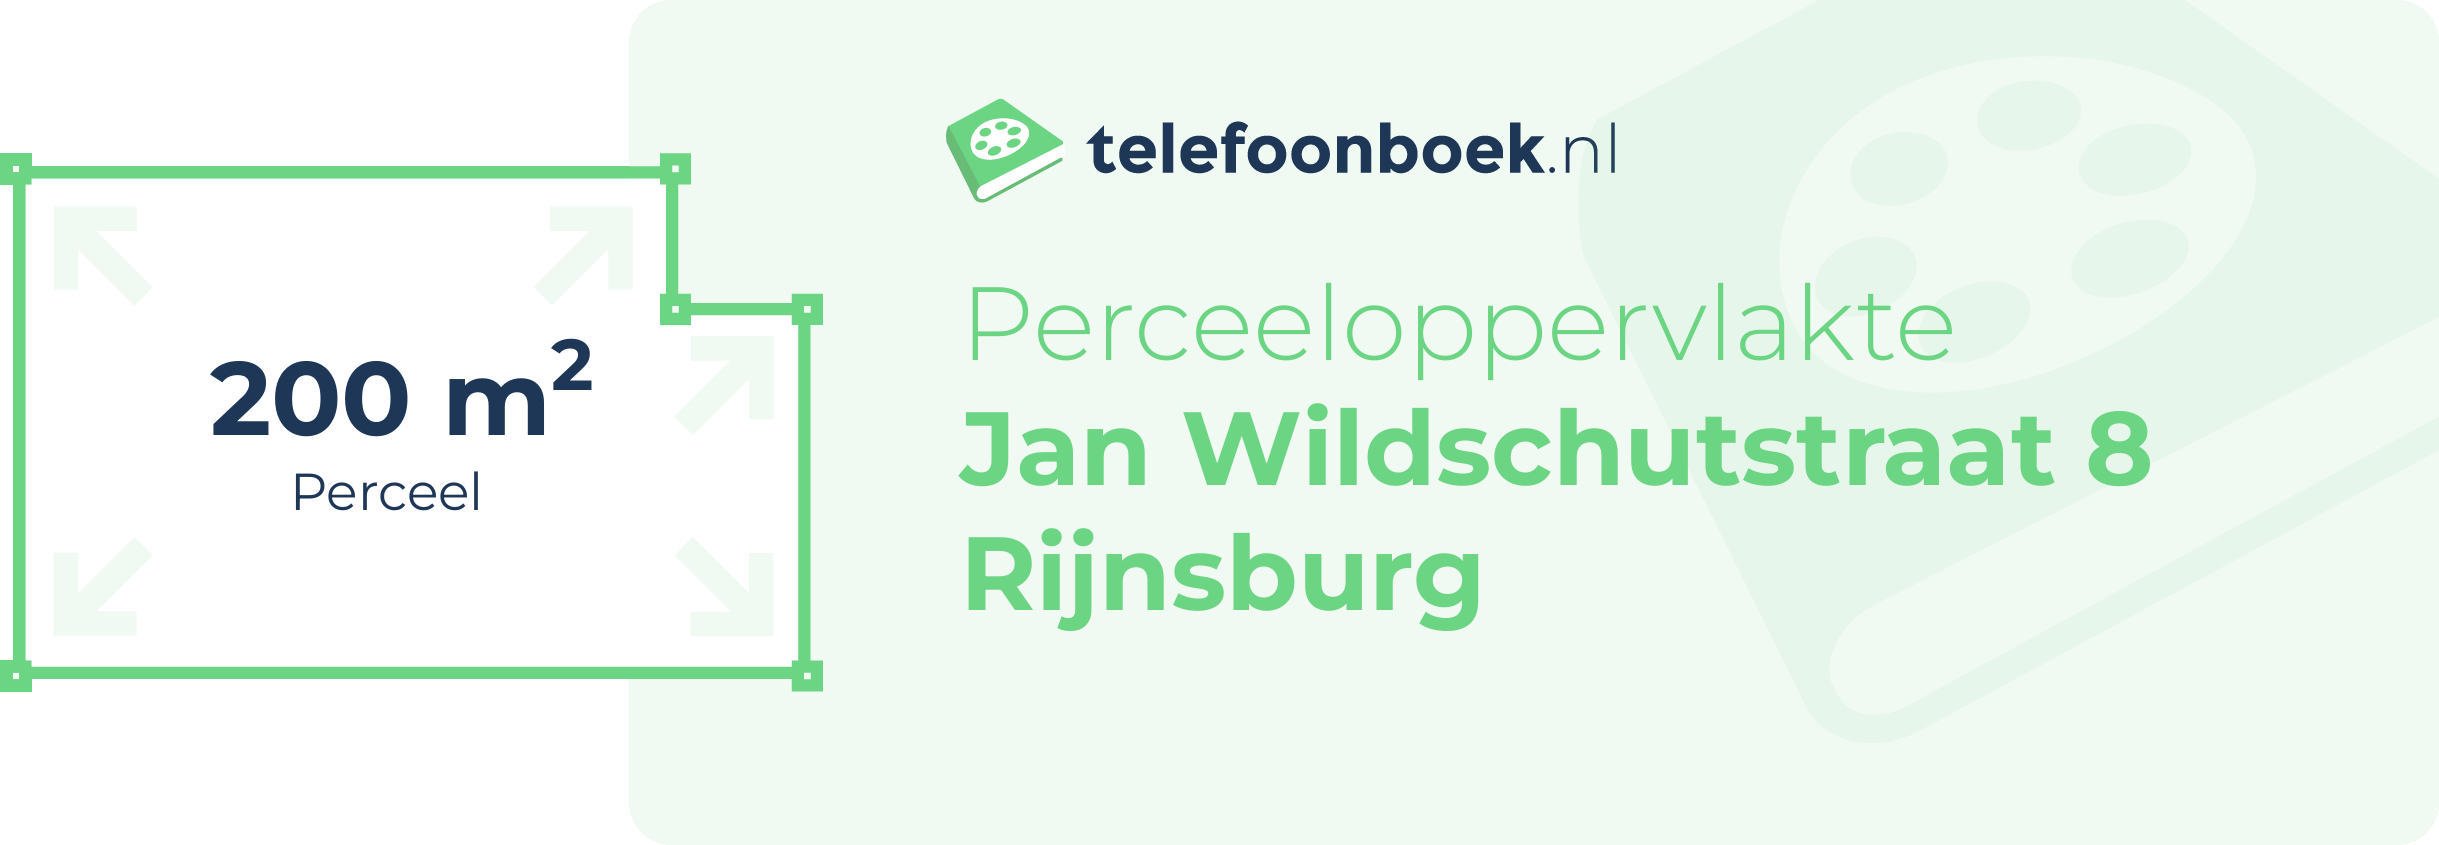 Perceeloppervlakte Jan Wildschutstraat 8 Rijnsburg